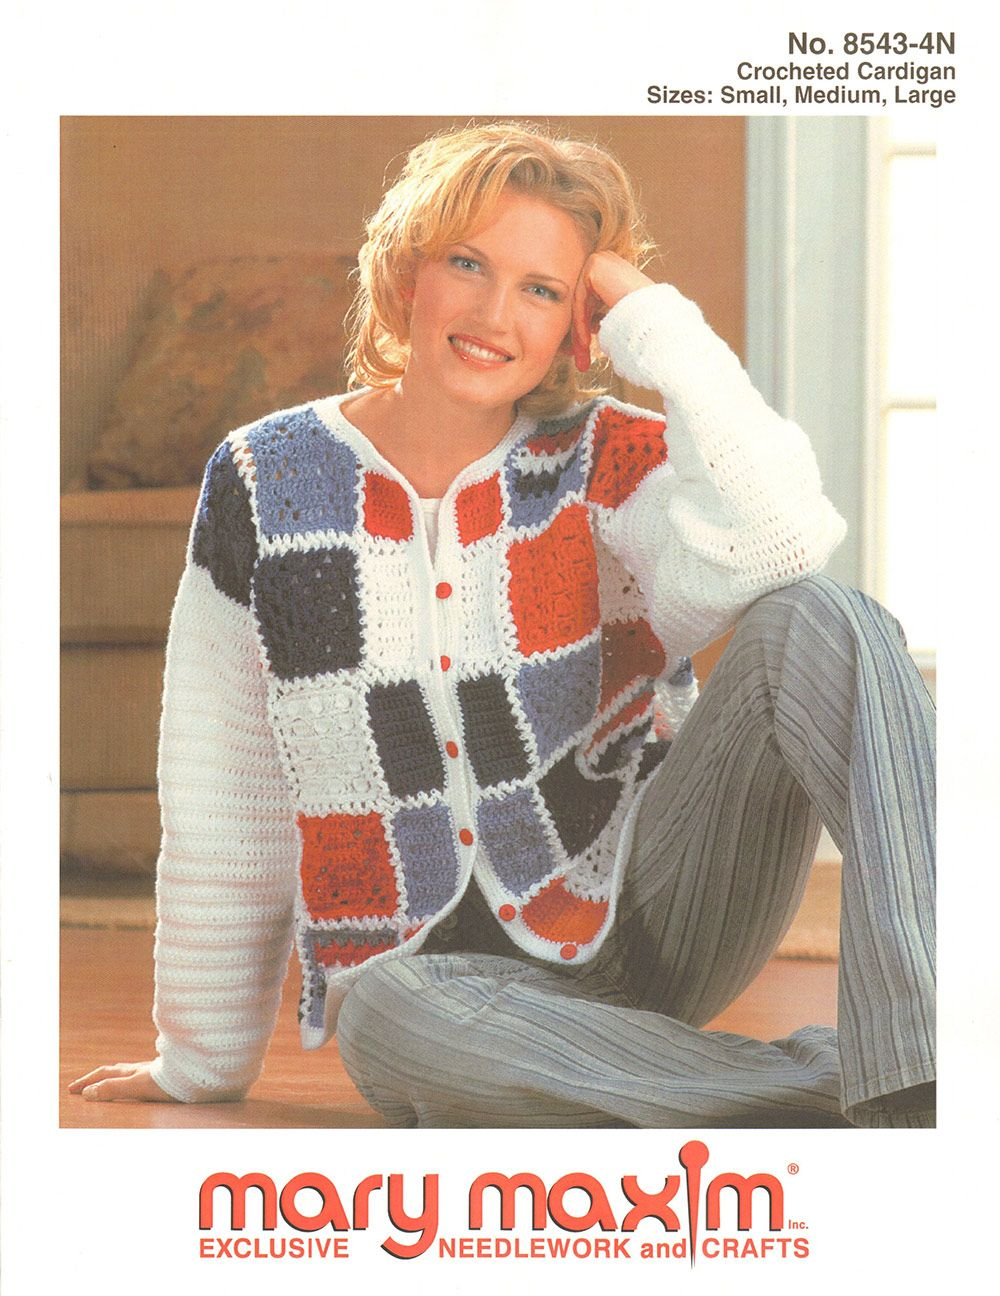 Crochet Sweater Pattern Free Crocheted Cardigan Pattern